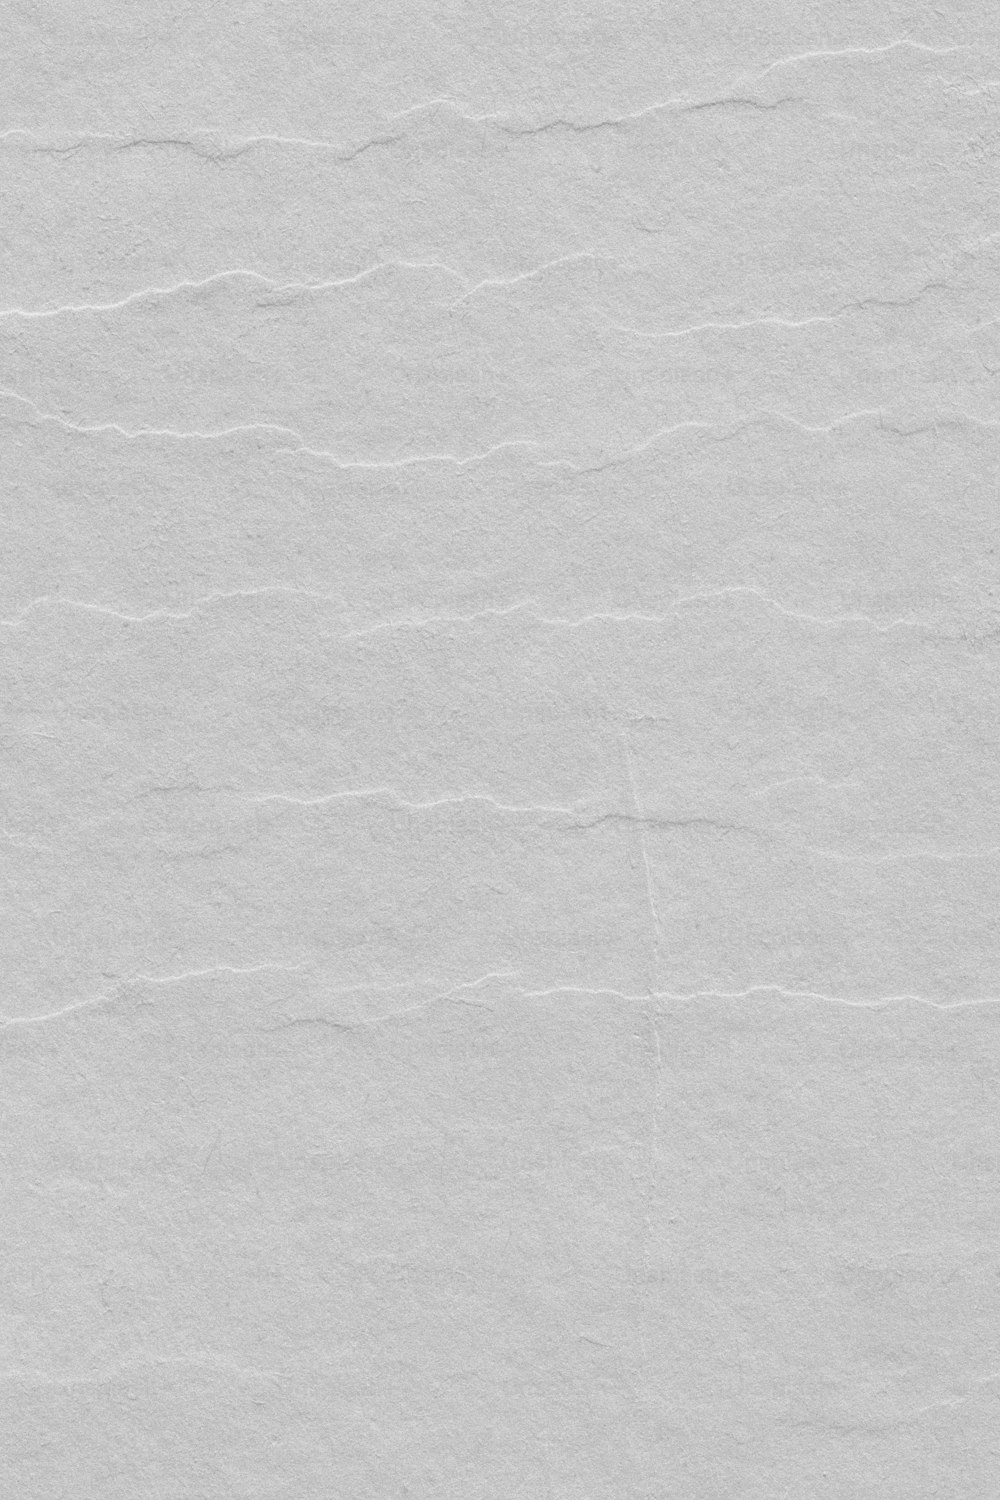 Un pedazo de papel blanco con algunas líneas